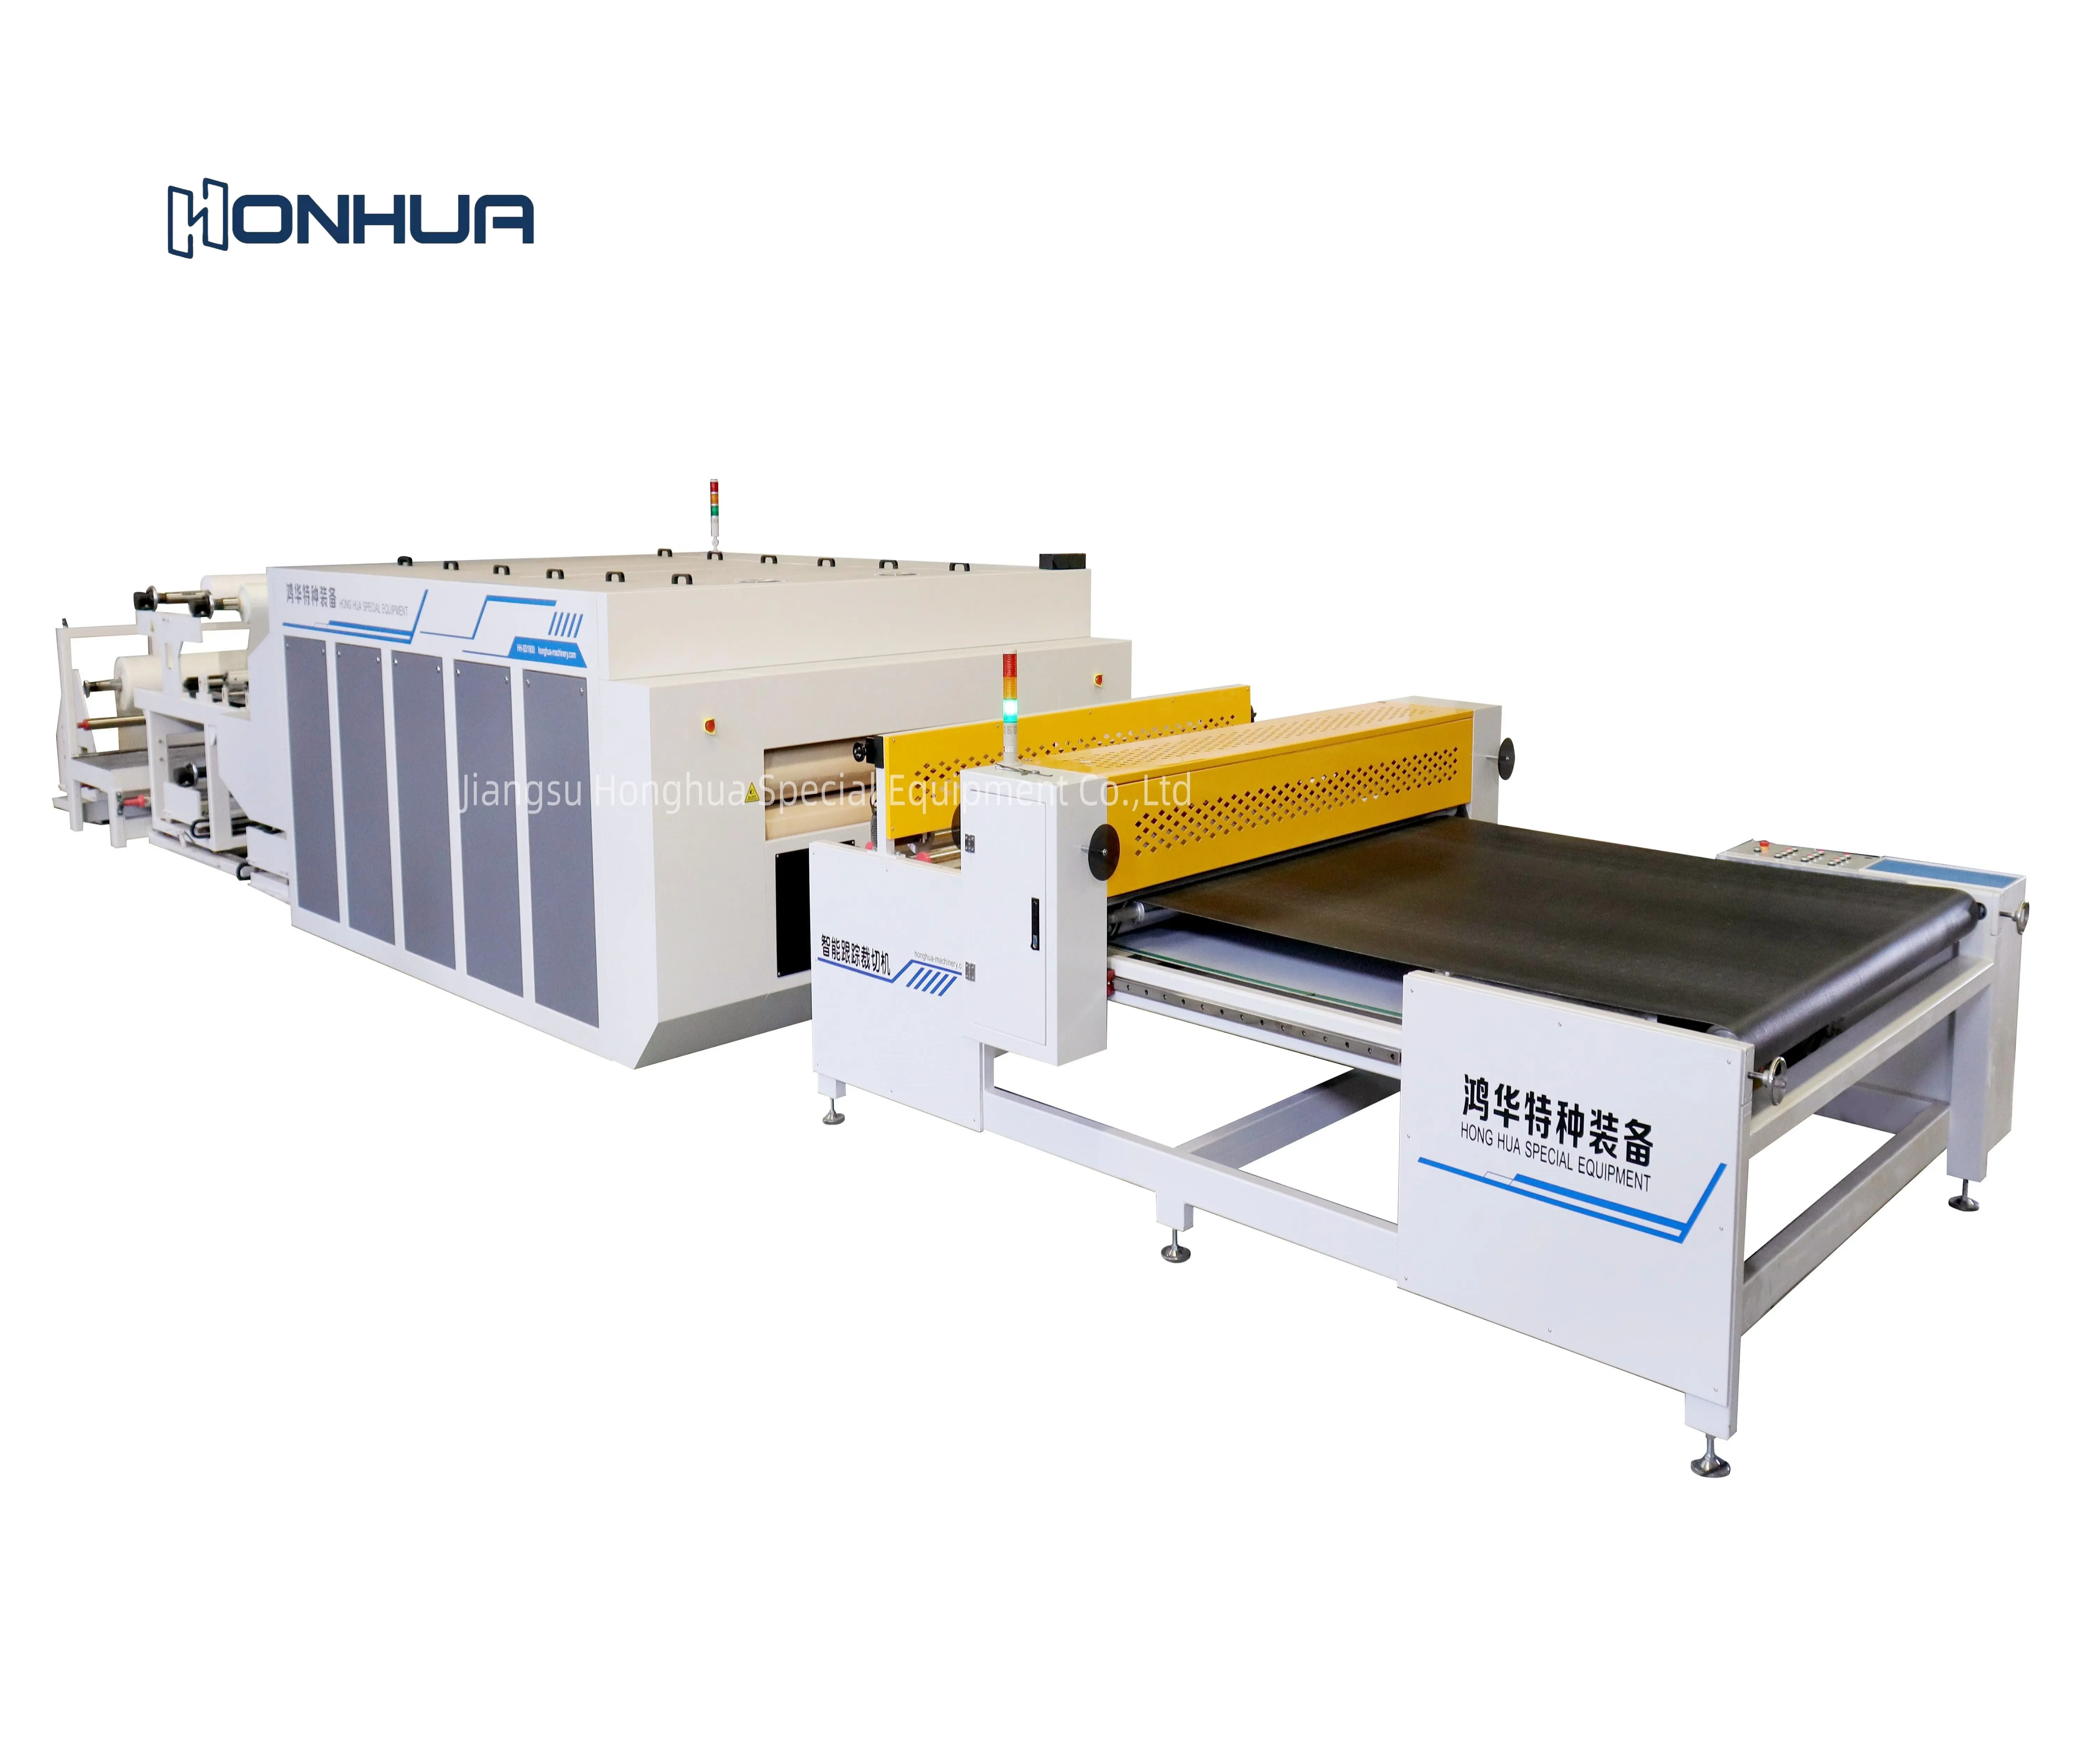 Honghua New nhôm tổ ong Bảng điều chỉnh liên tục Laminator dây chuyền sản xuất Bảng điều chỉnh phẳng cán các nhà sản xuất máy